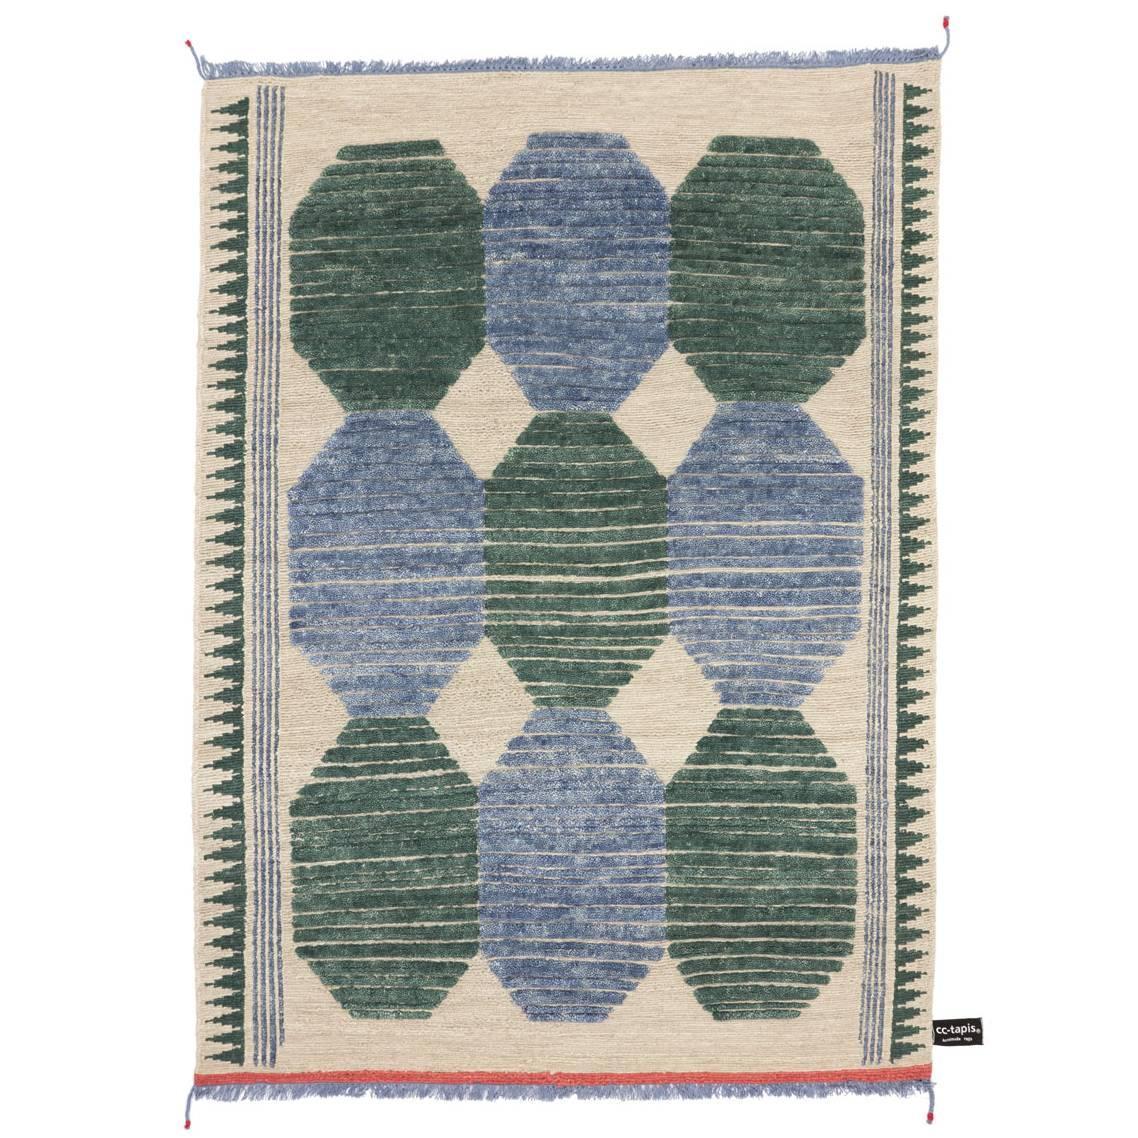 Primitive Weave C Blauer/Grün #1182 Teppich entworfen von Chiara Andreatti für cc-tapis